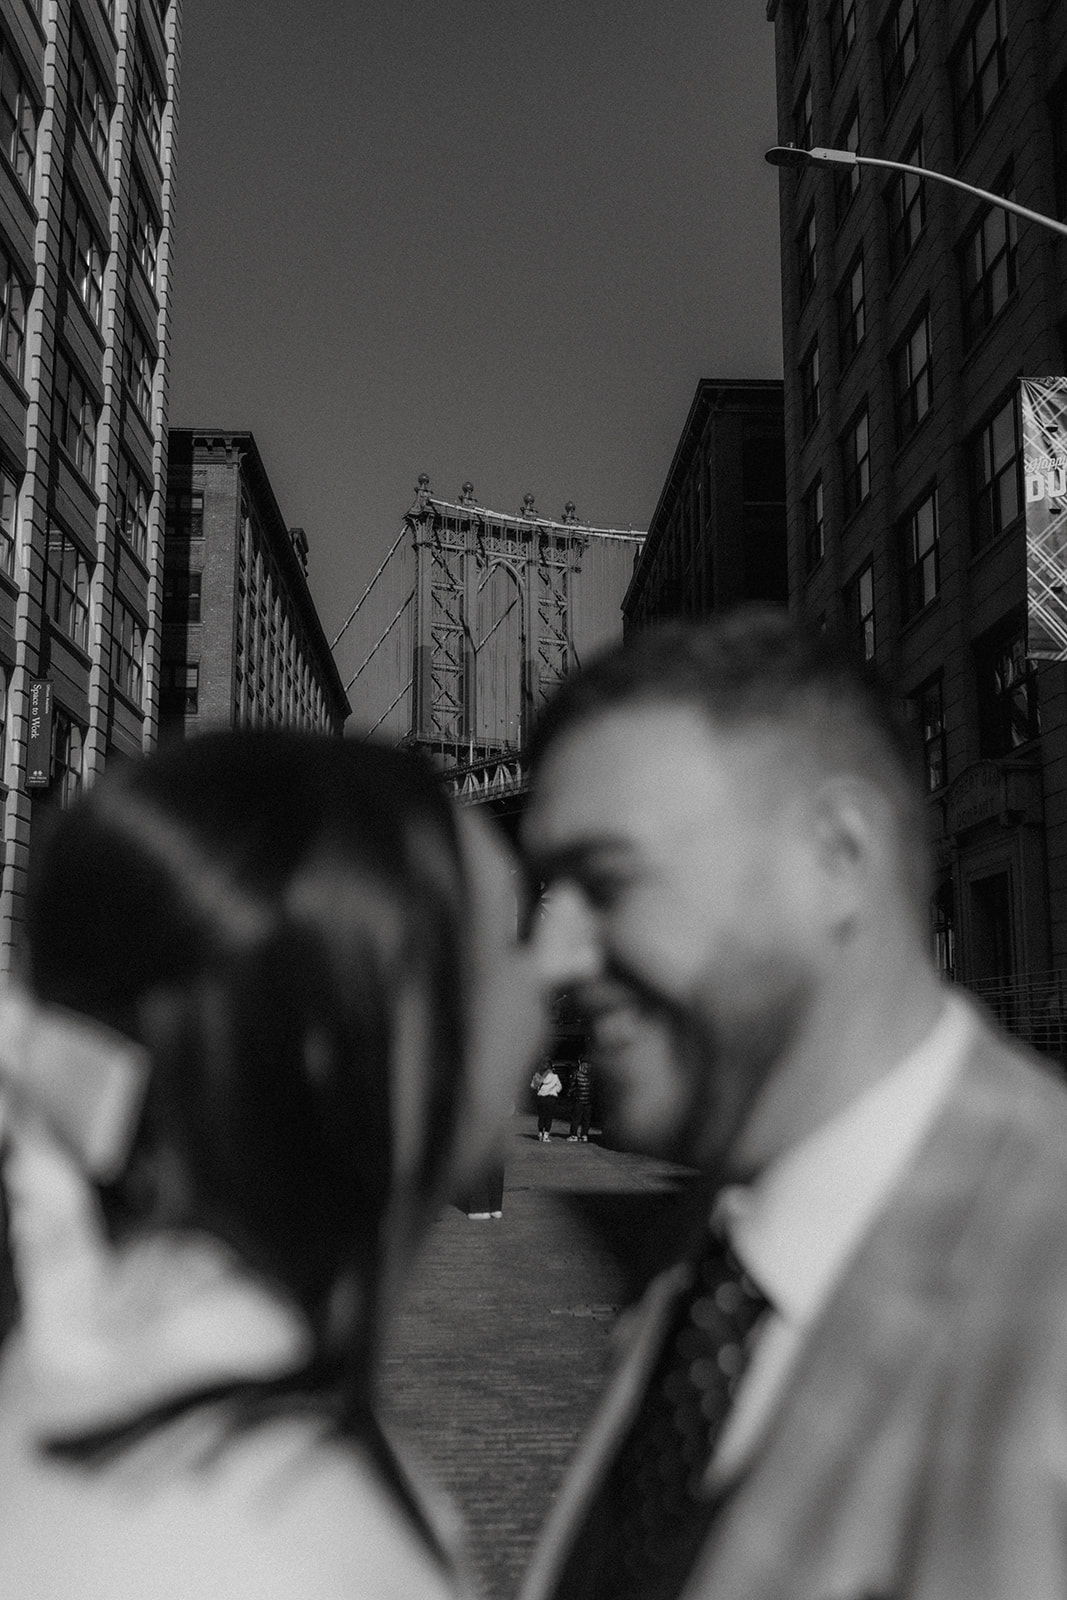 New York City elopement in the neighborhood of DUMBO